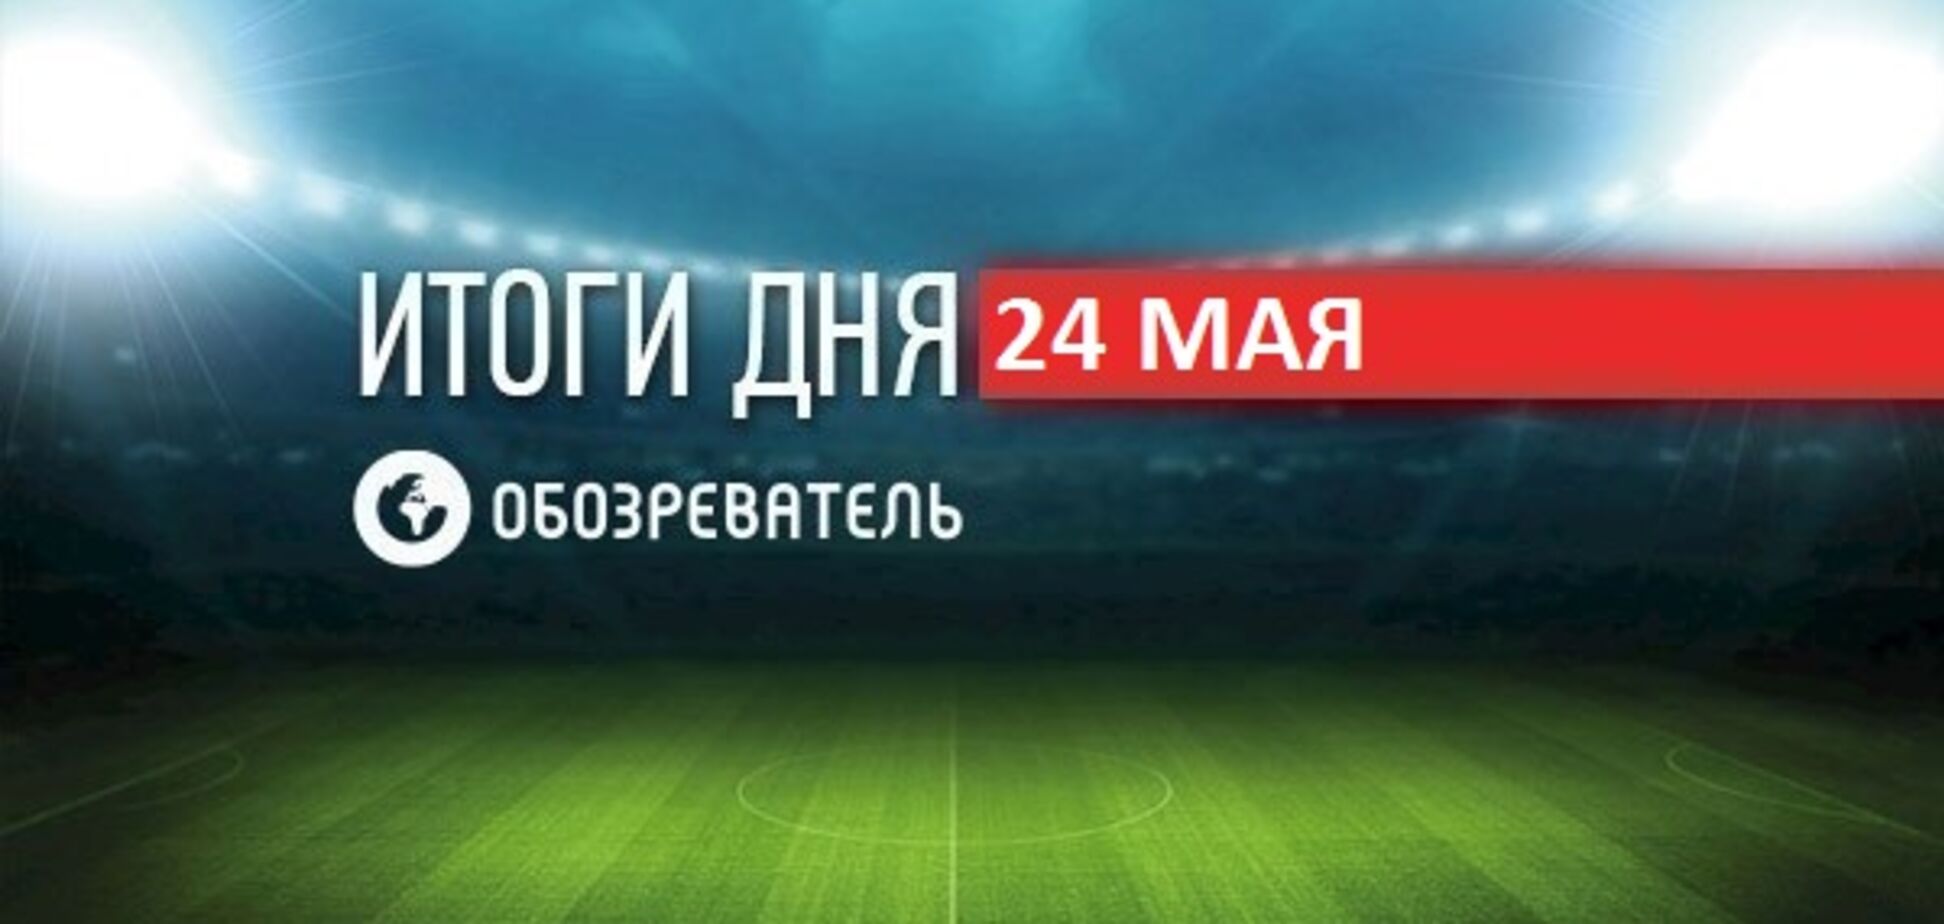 РосСМИ заступилось за Украину из-за финала Лиги чемпионов: спортивные итоги 24 мая